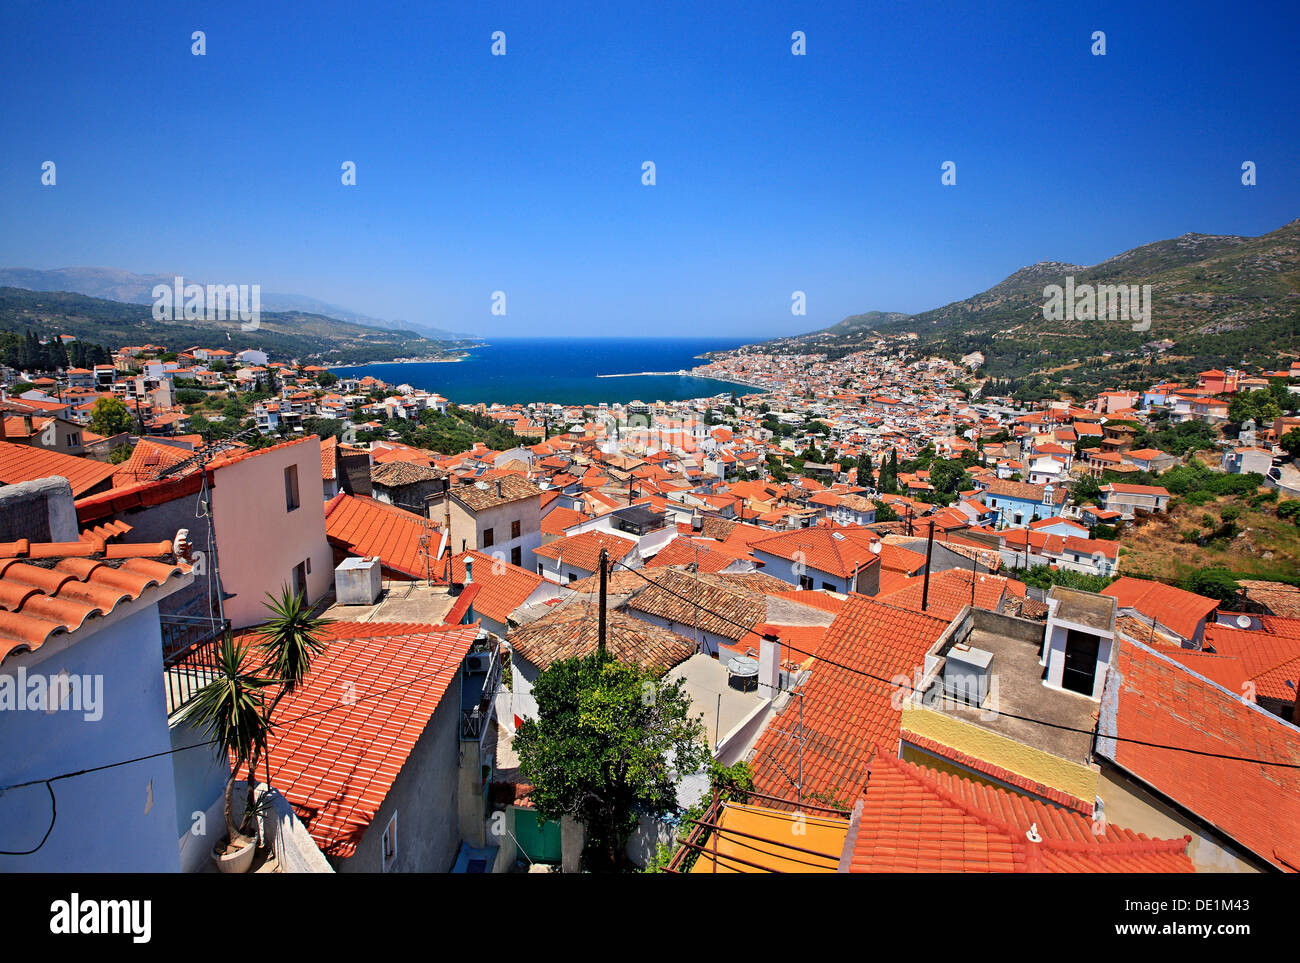 Vue panoramique de la ville de Samos (Vathi), l'île de Samos, Mer Égée, Grèce. Banque D'Images